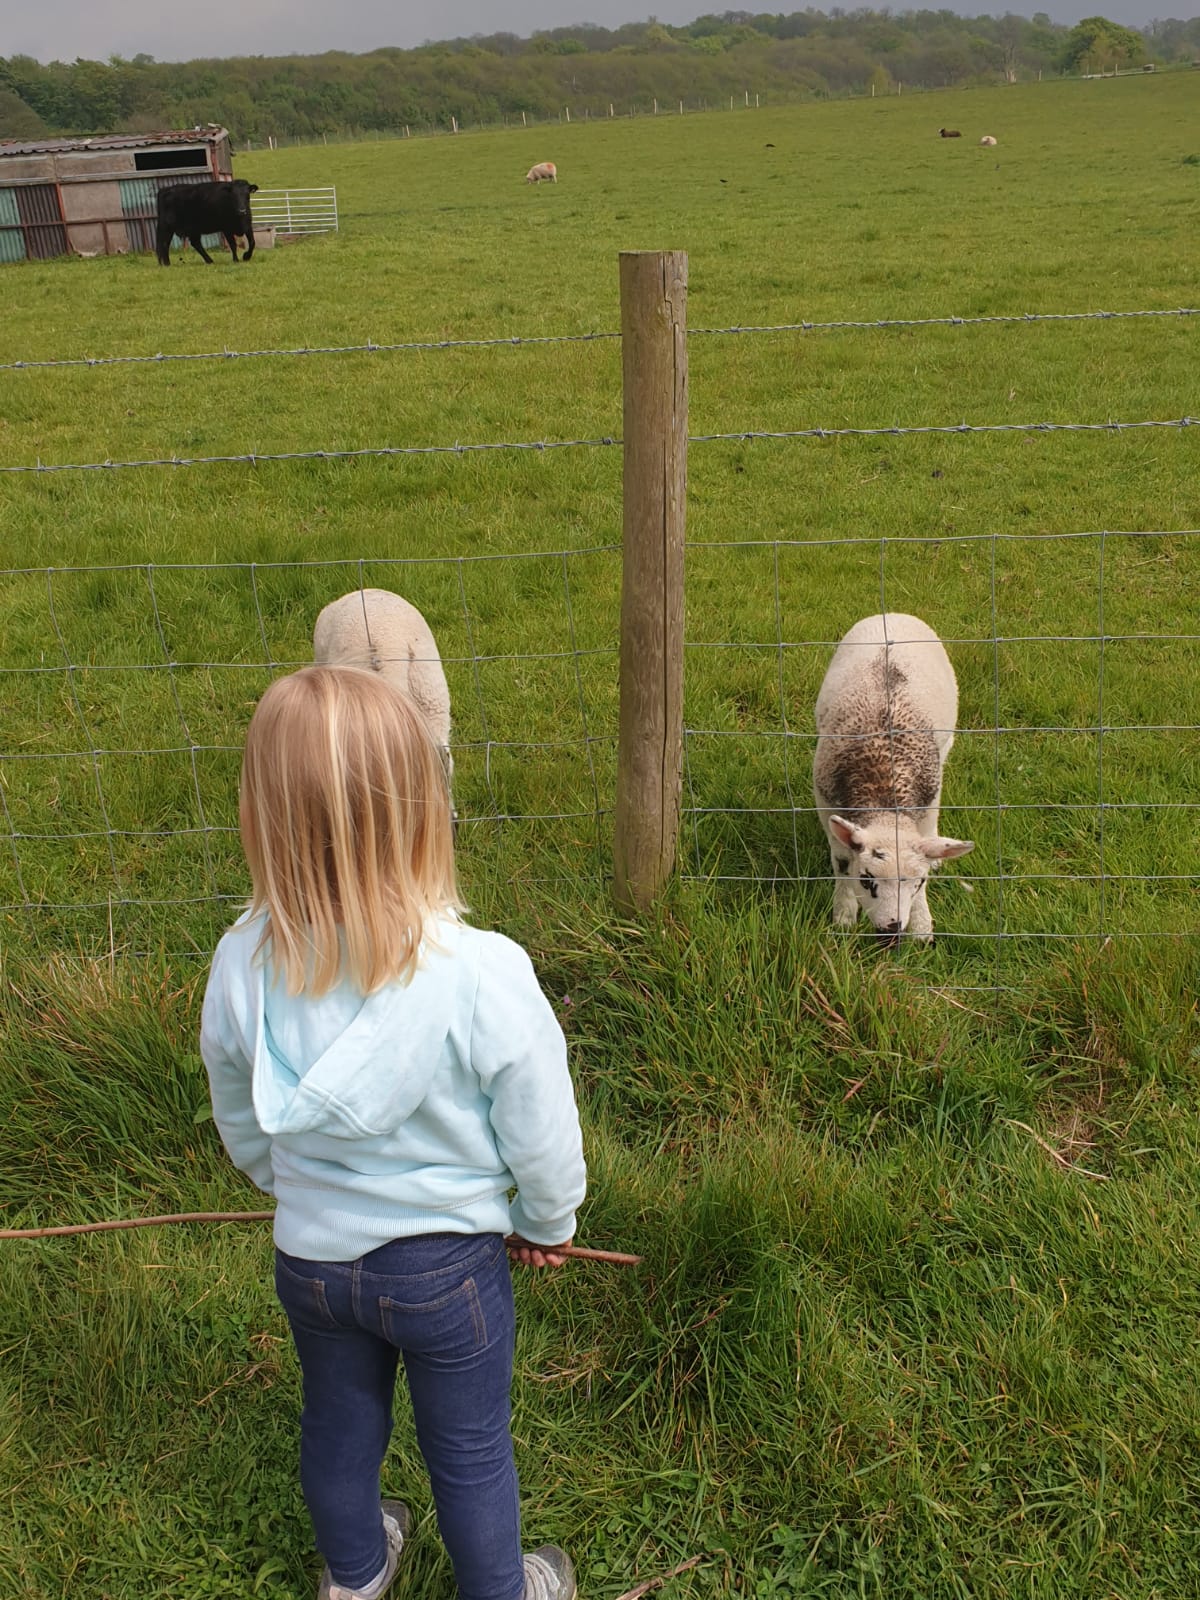 Child looking at sheep